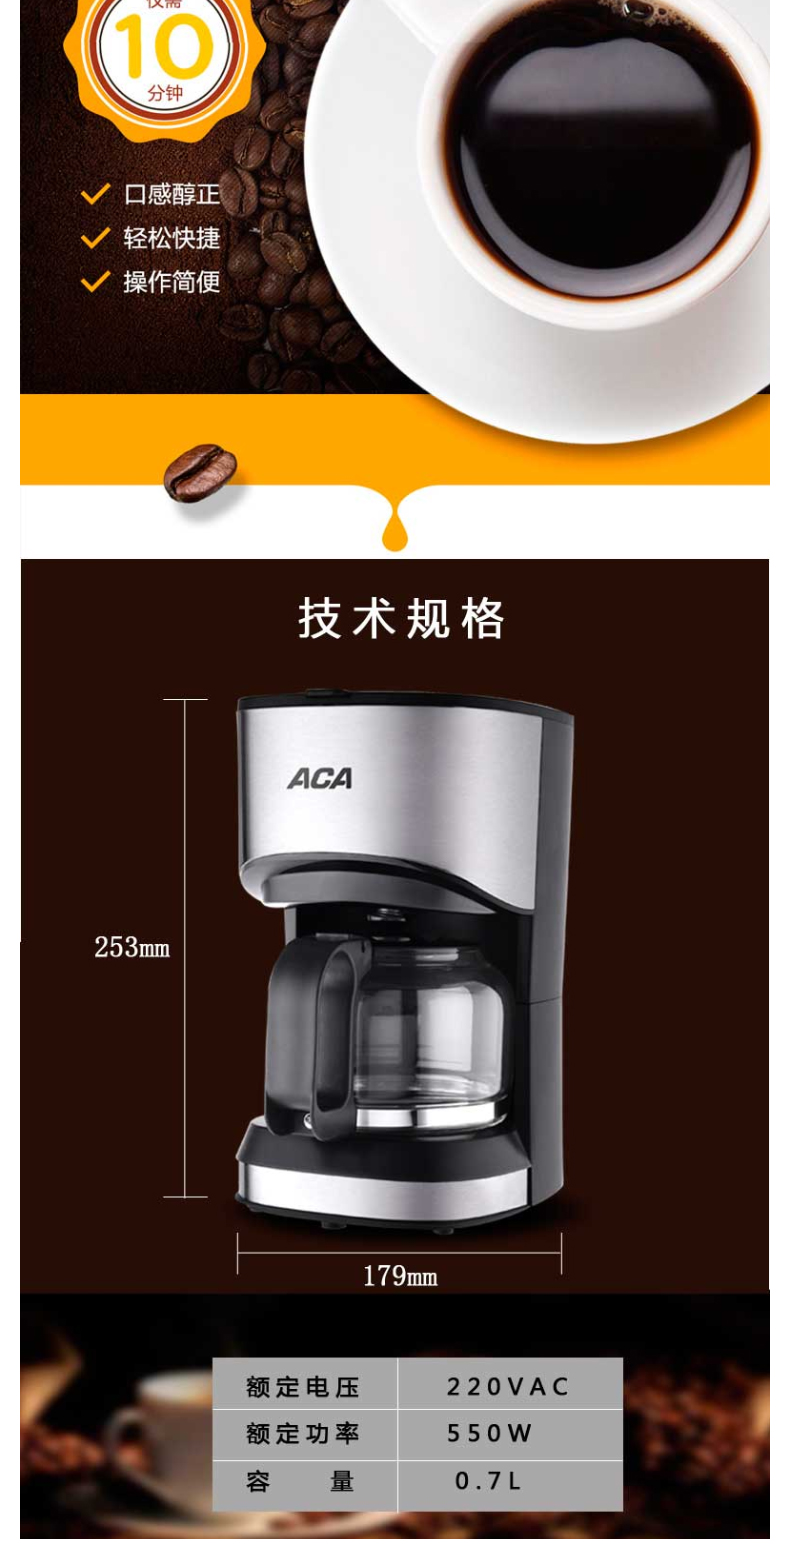 北美电器 ACA 咖啡机 ALY-KF070D 